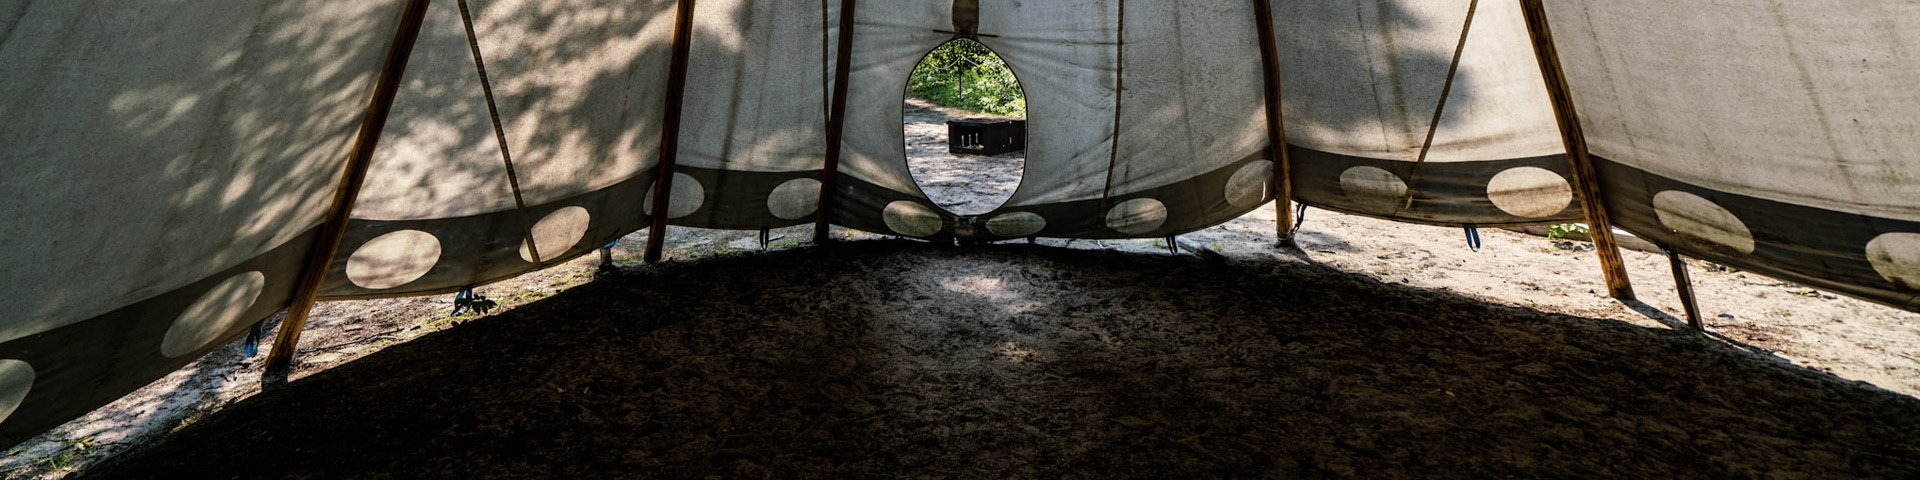 Inside an Anishinaabe camp.